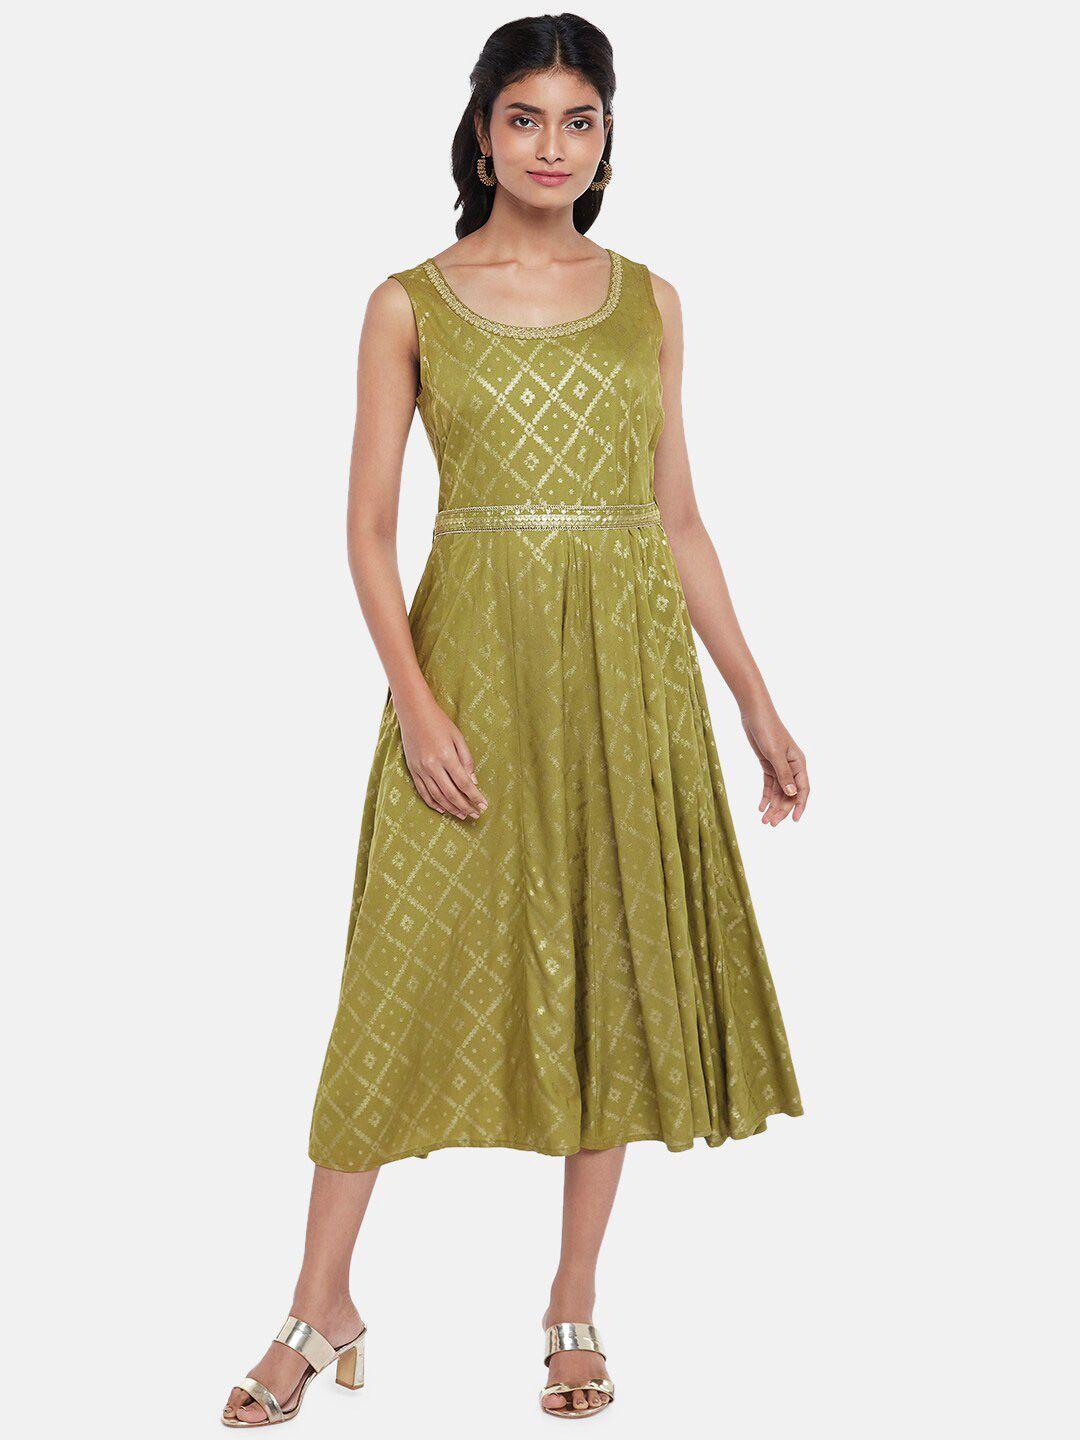 akkriti by pantaloons green printed midi dress